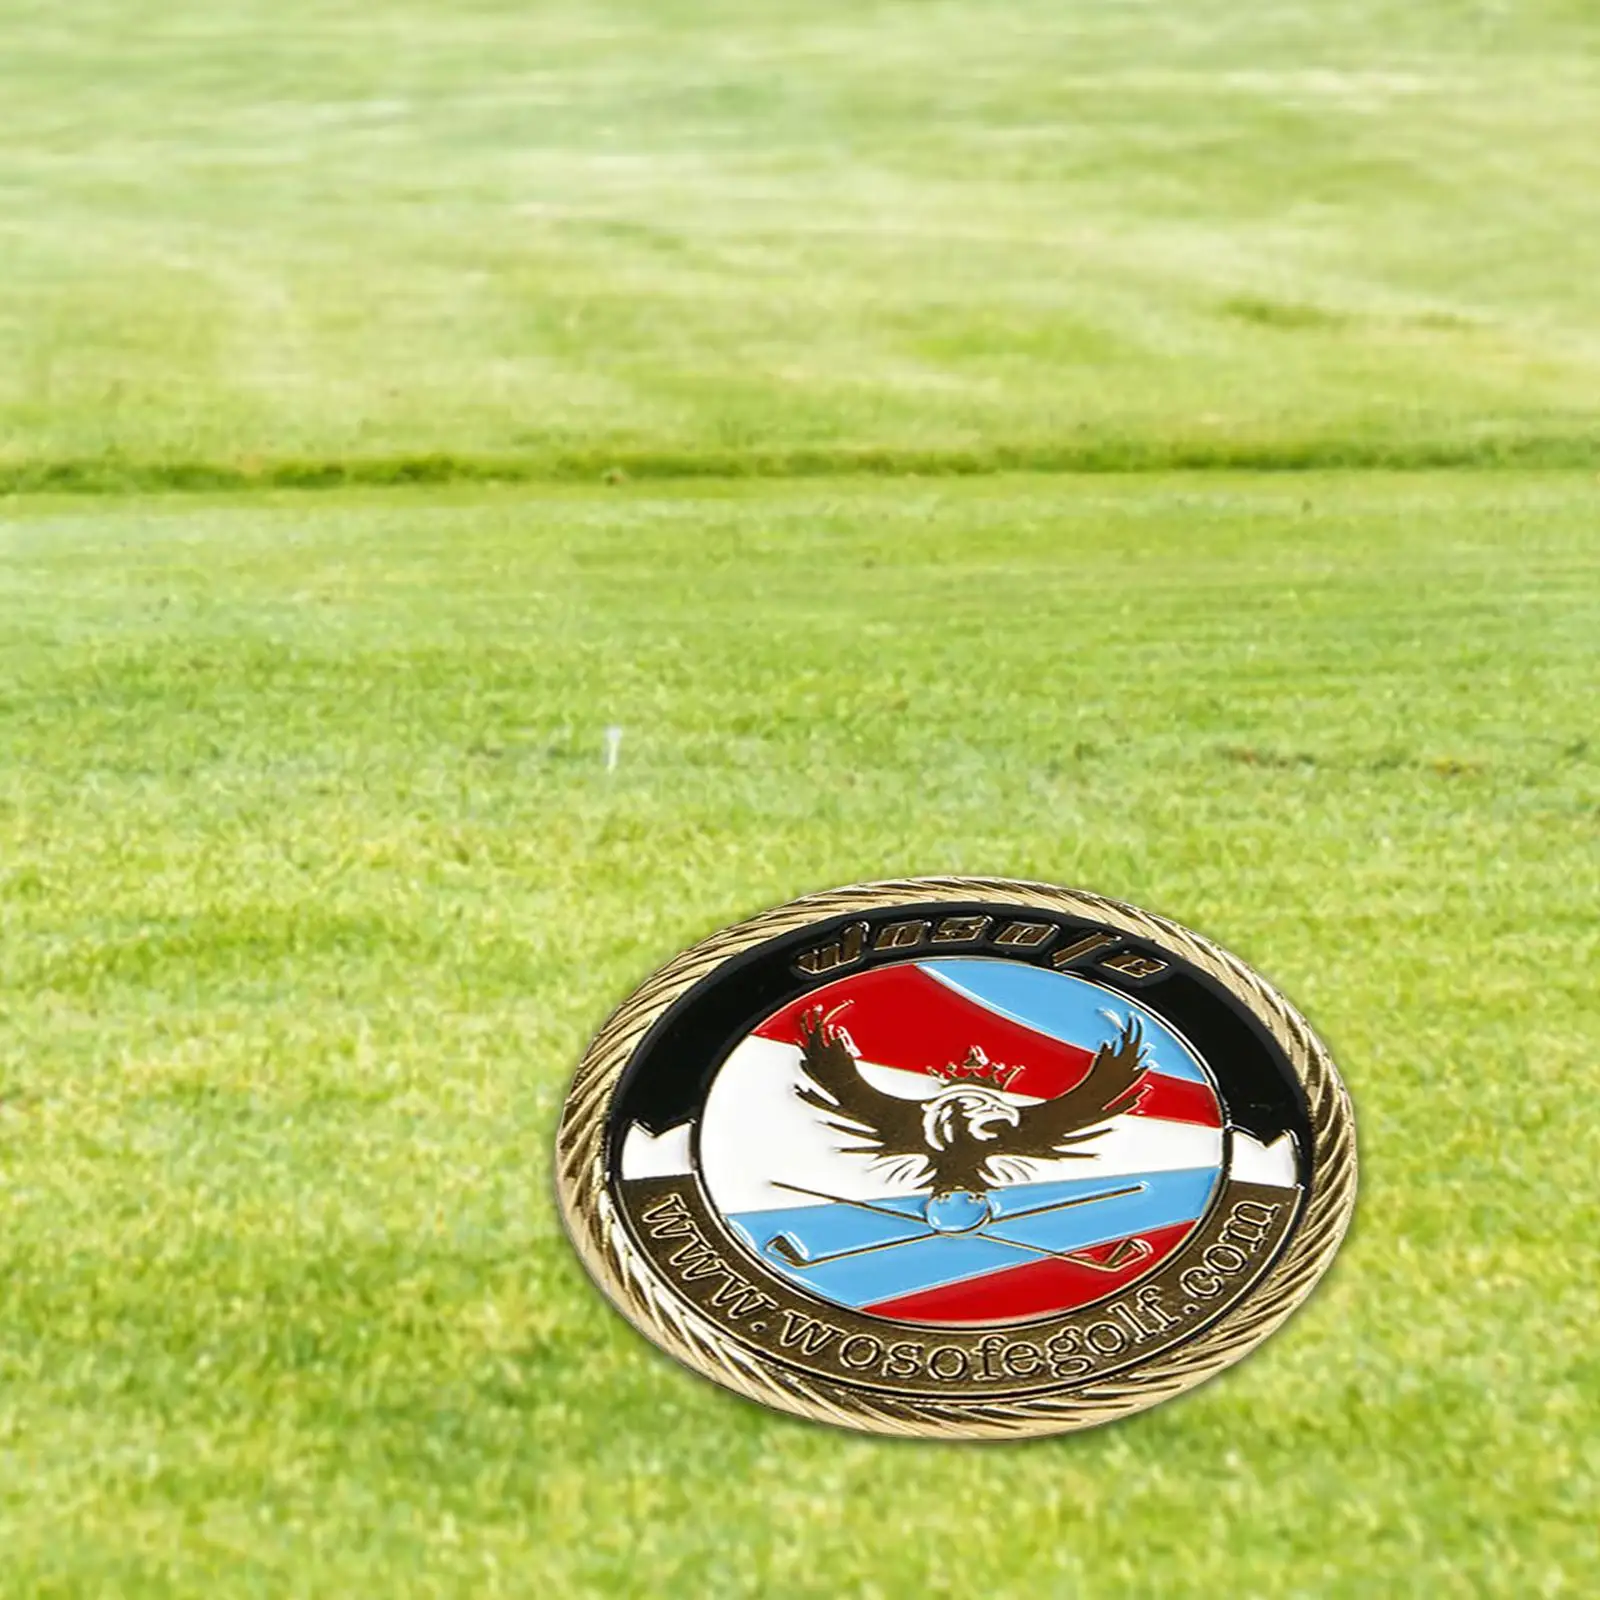 Zinc Alloy Golf Ball Marker Magnetic Putt Sign Putting Position Mark Keepsake Golfer Gift Accessories